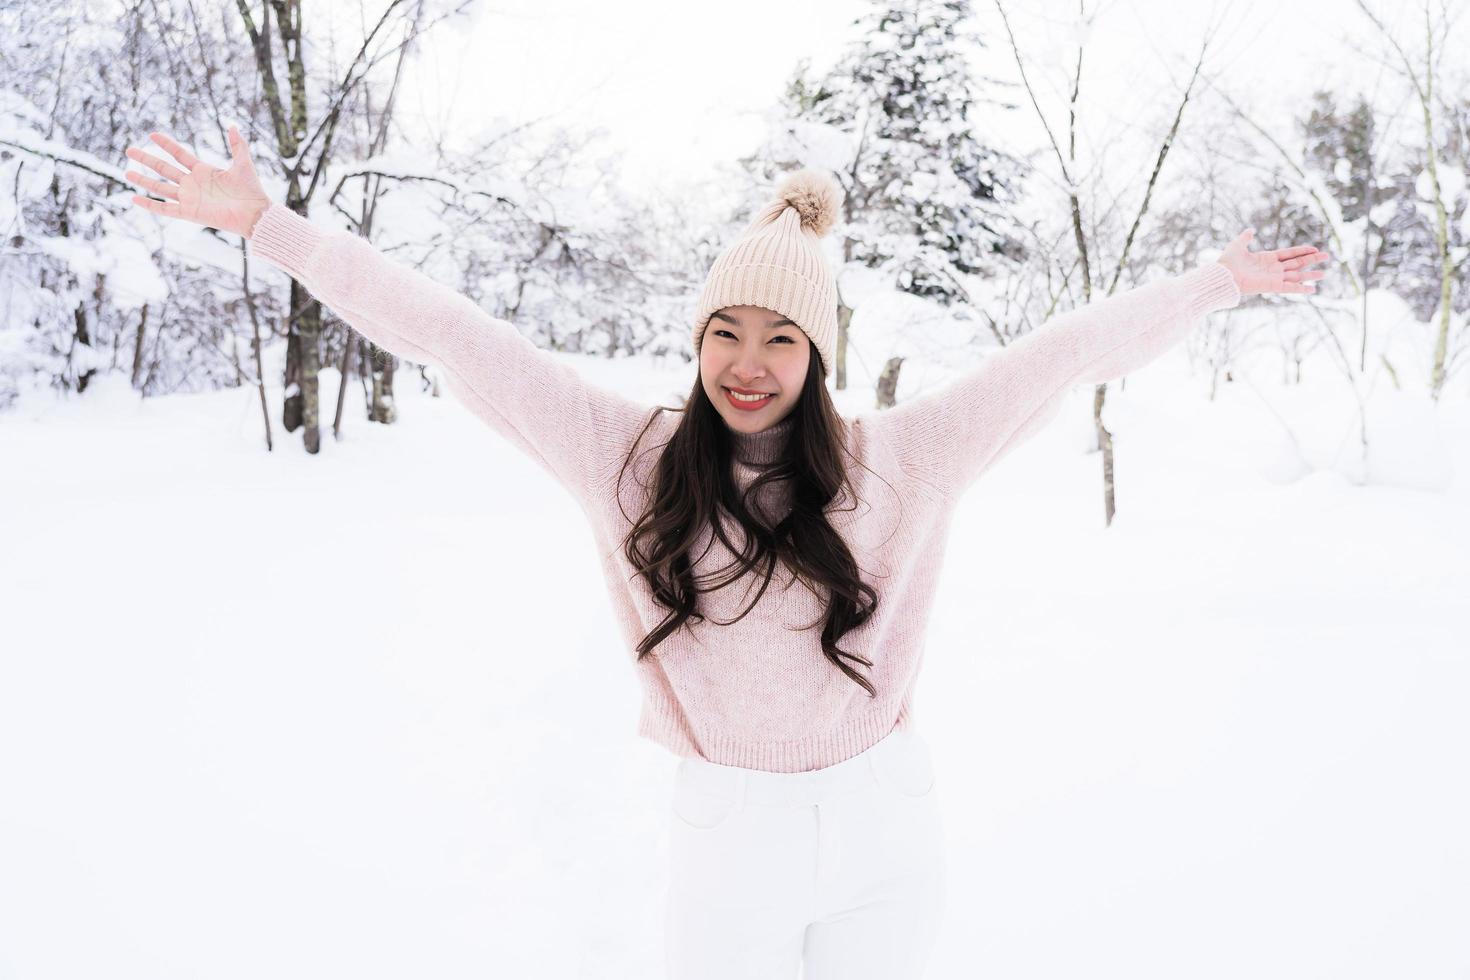 Retrato joven hermosa mujer asiática sonríe feliz viaje y disfruta con la nieve en la temporada de invierno foto